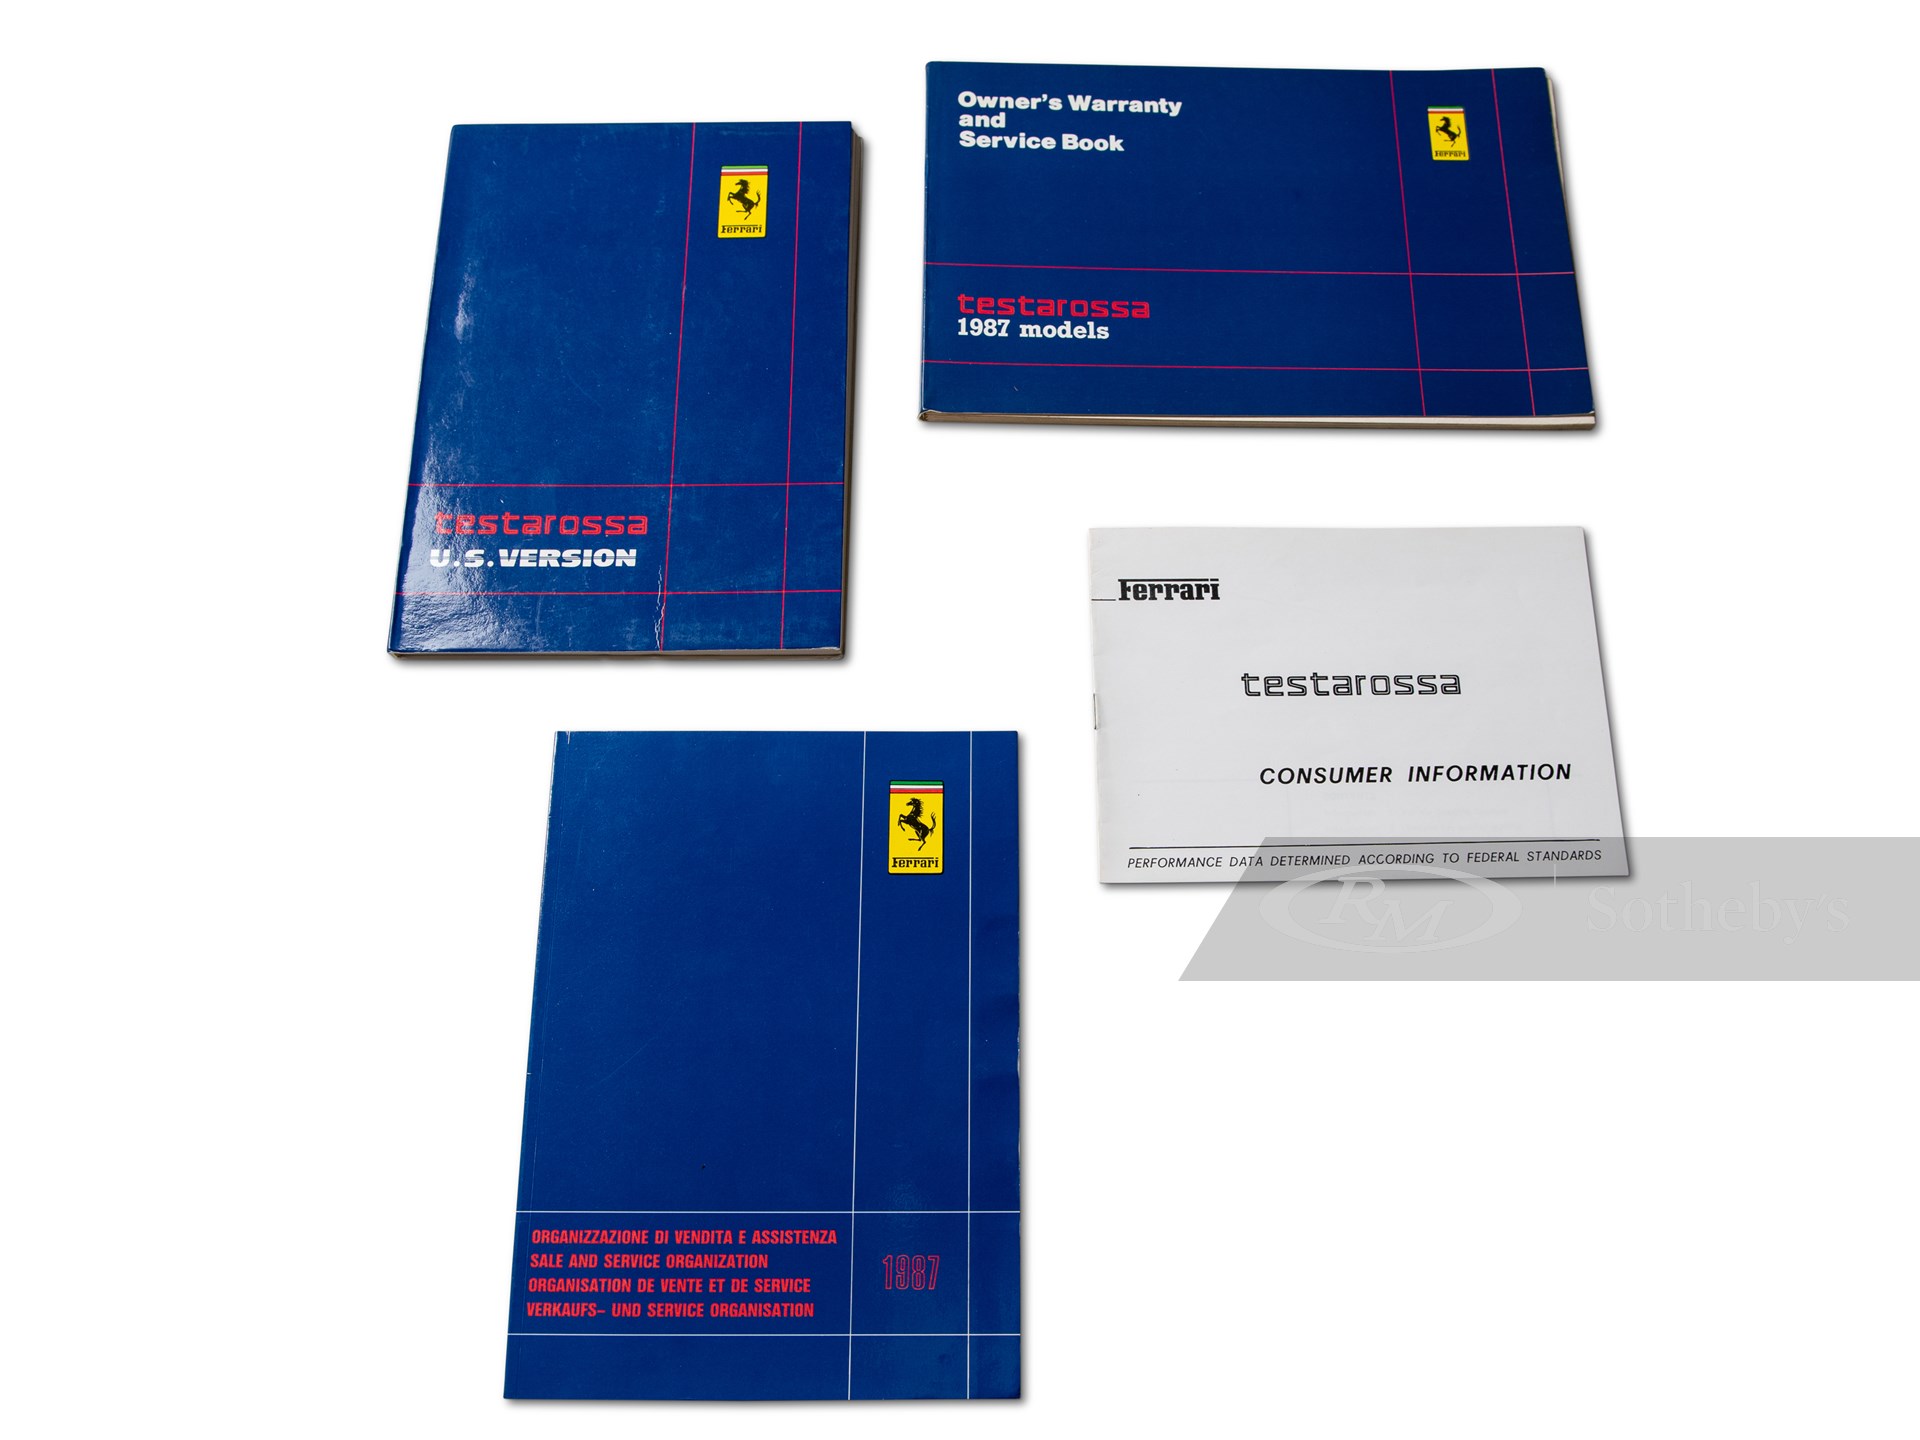 Ferrari Testarossa Owner's Manual Set with Folio, US Version, 1987